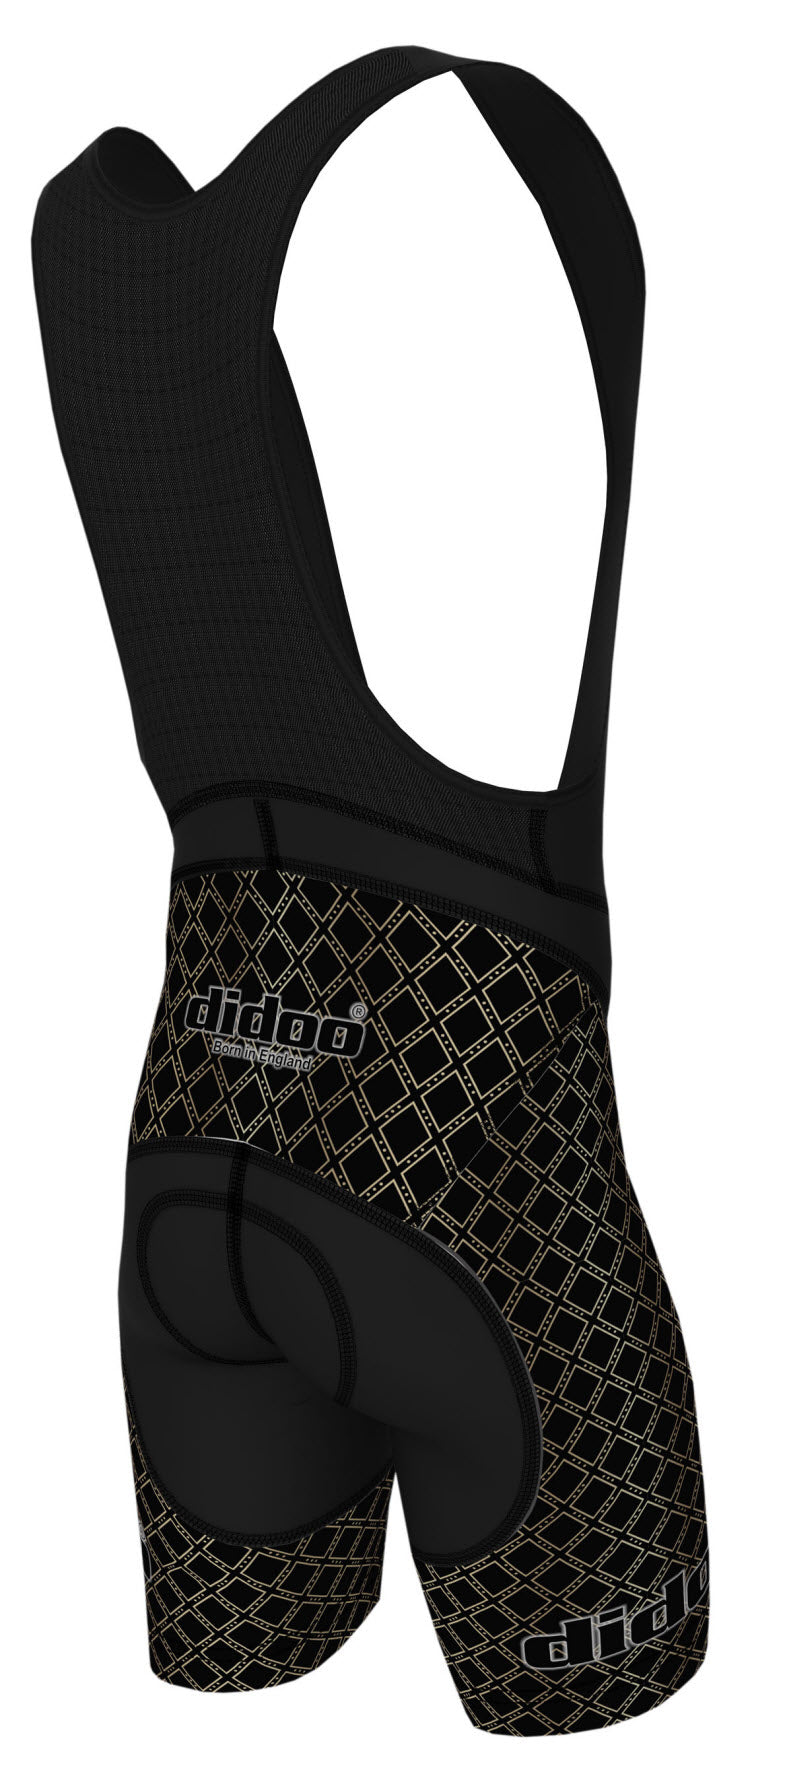 DiDOO Men's Classic Quick Dry Padded Cycling Bib Shorts Black